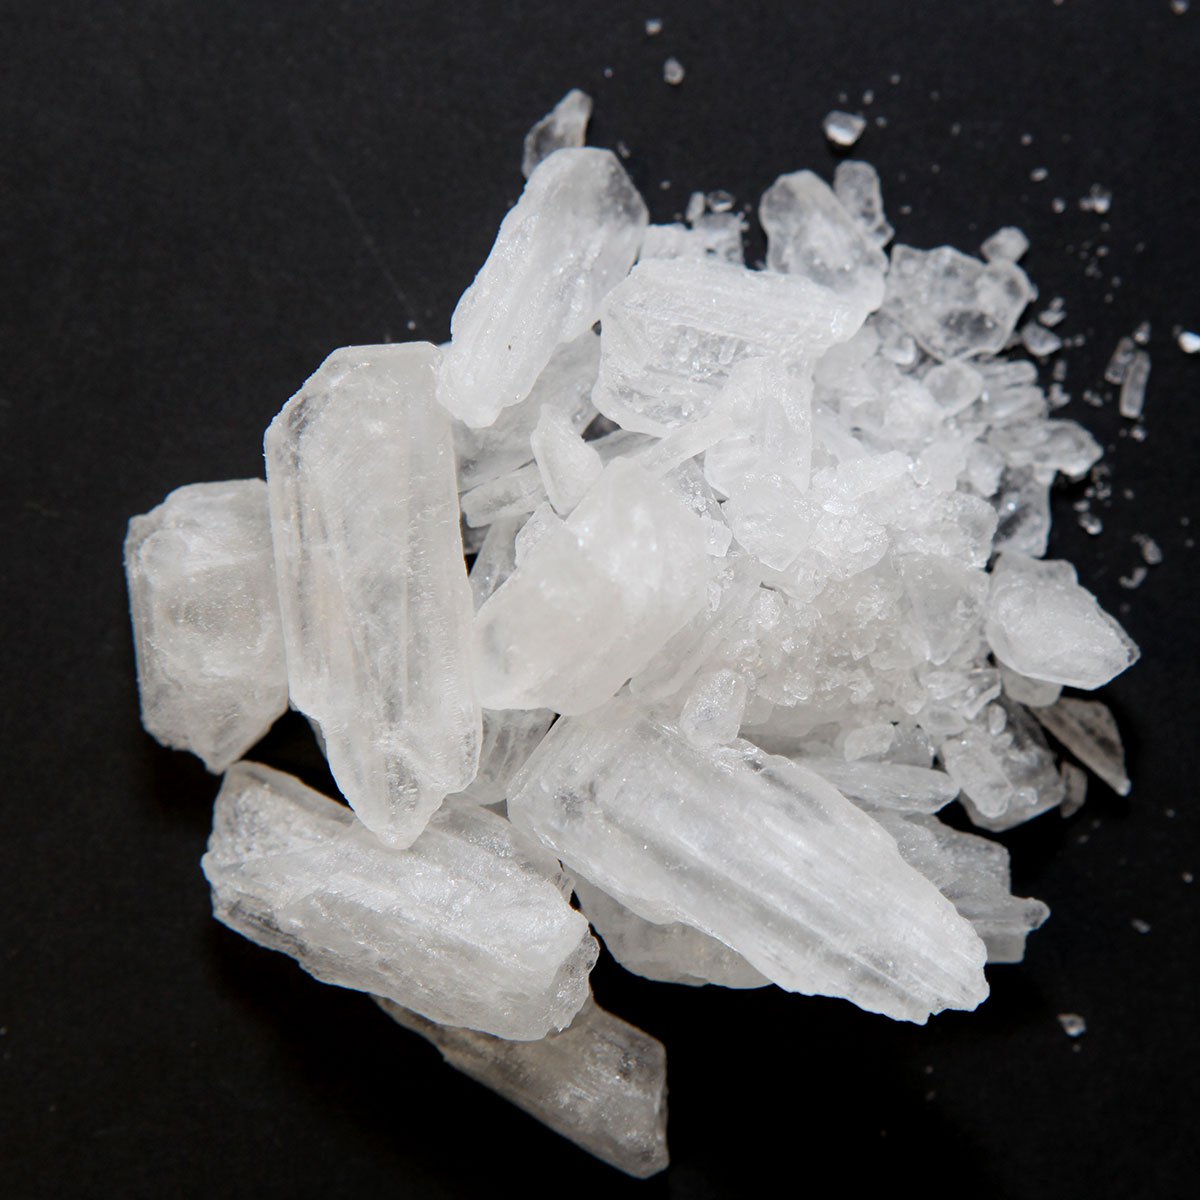 Crystal methamphetamine close up